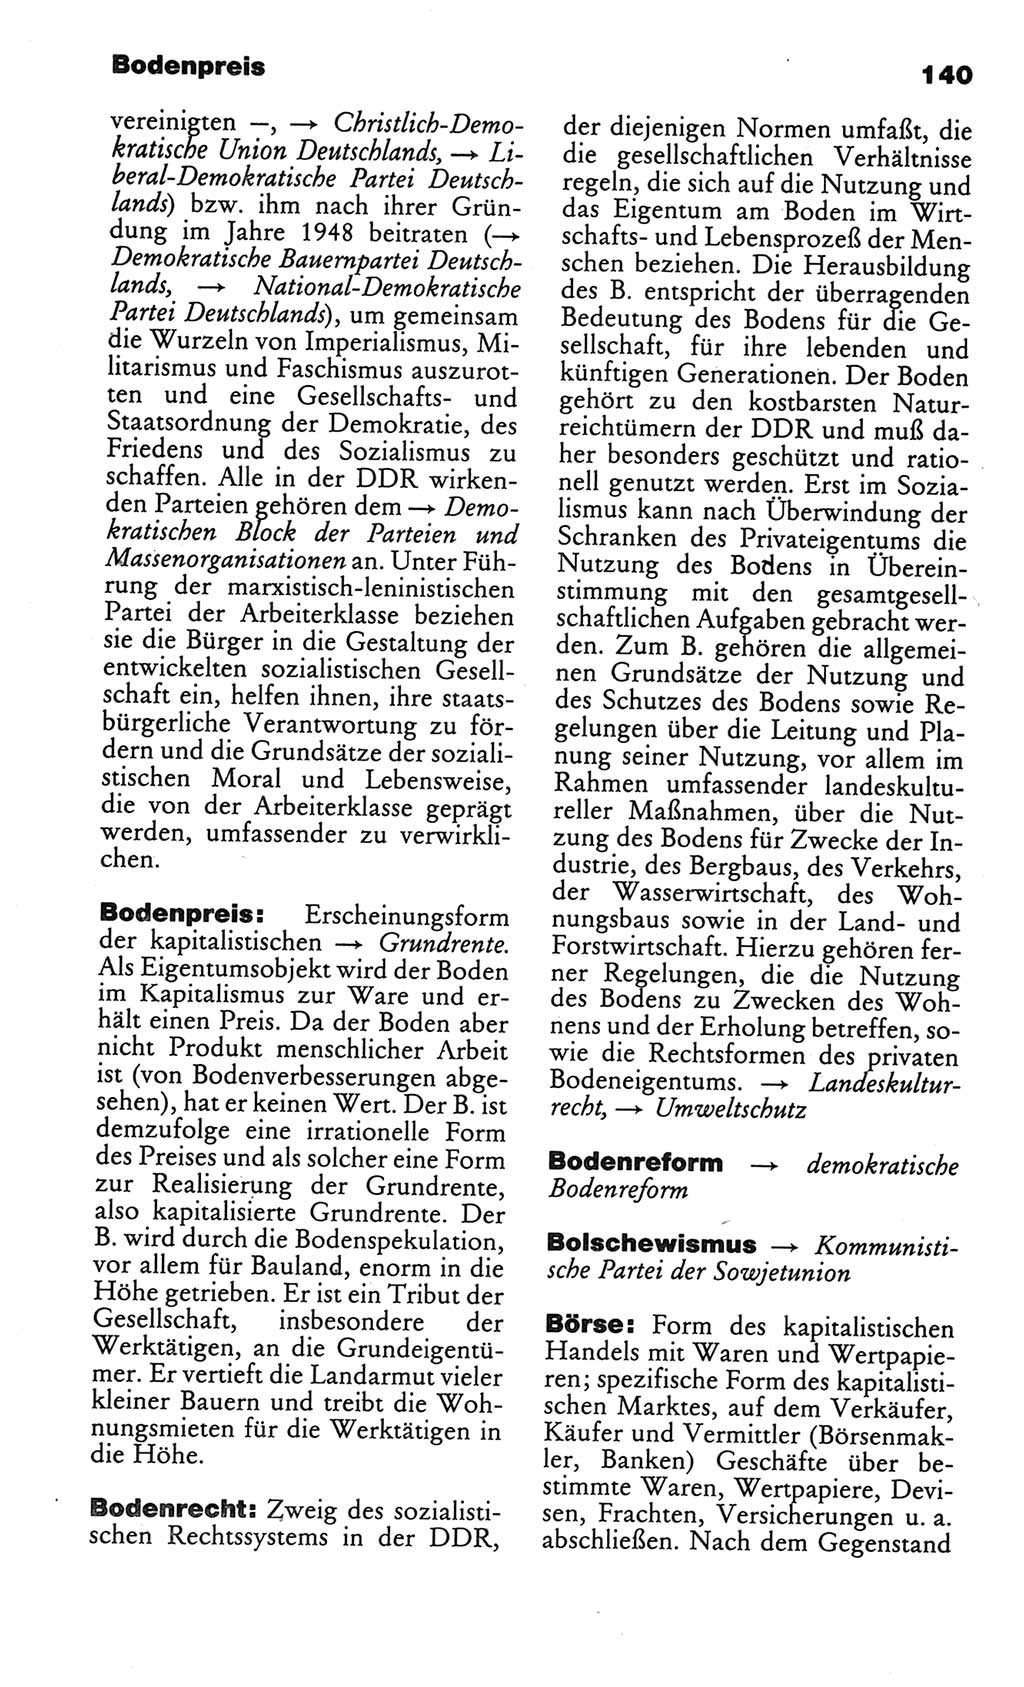 Kleines politisches Wörterbuch [Deutsche Demokratische Republik (DDR)] 1986, Seite 140 (Kl. pol. Wb. DDR 1986, S. 140)